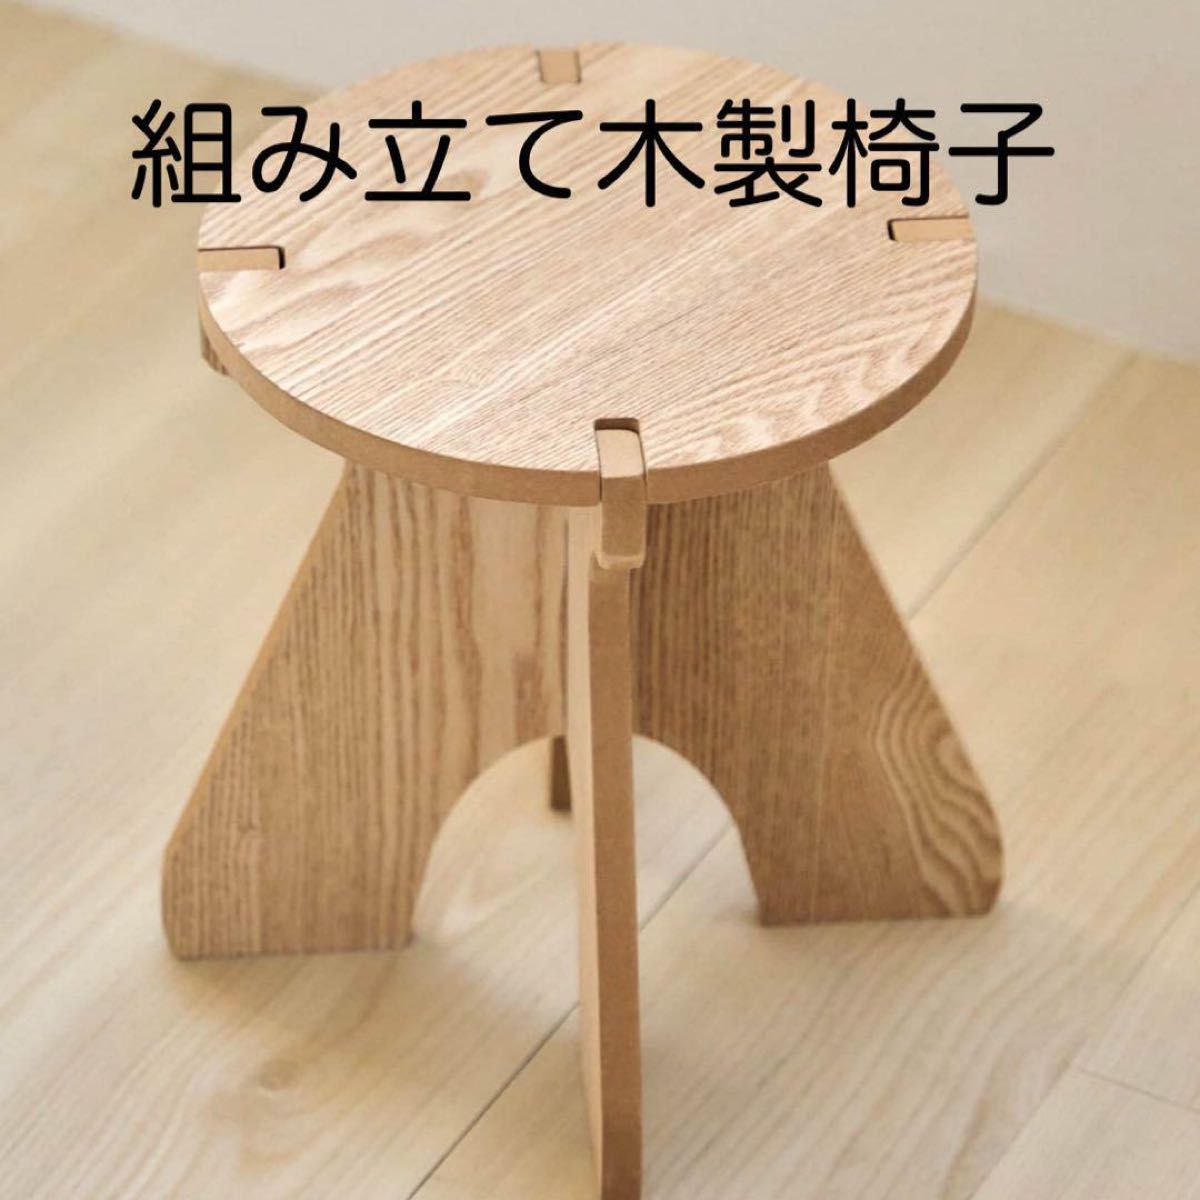 スツール 木製椅子 ジャグスタンド サイドテーブル ランタン台 花 キャンプ椅子 